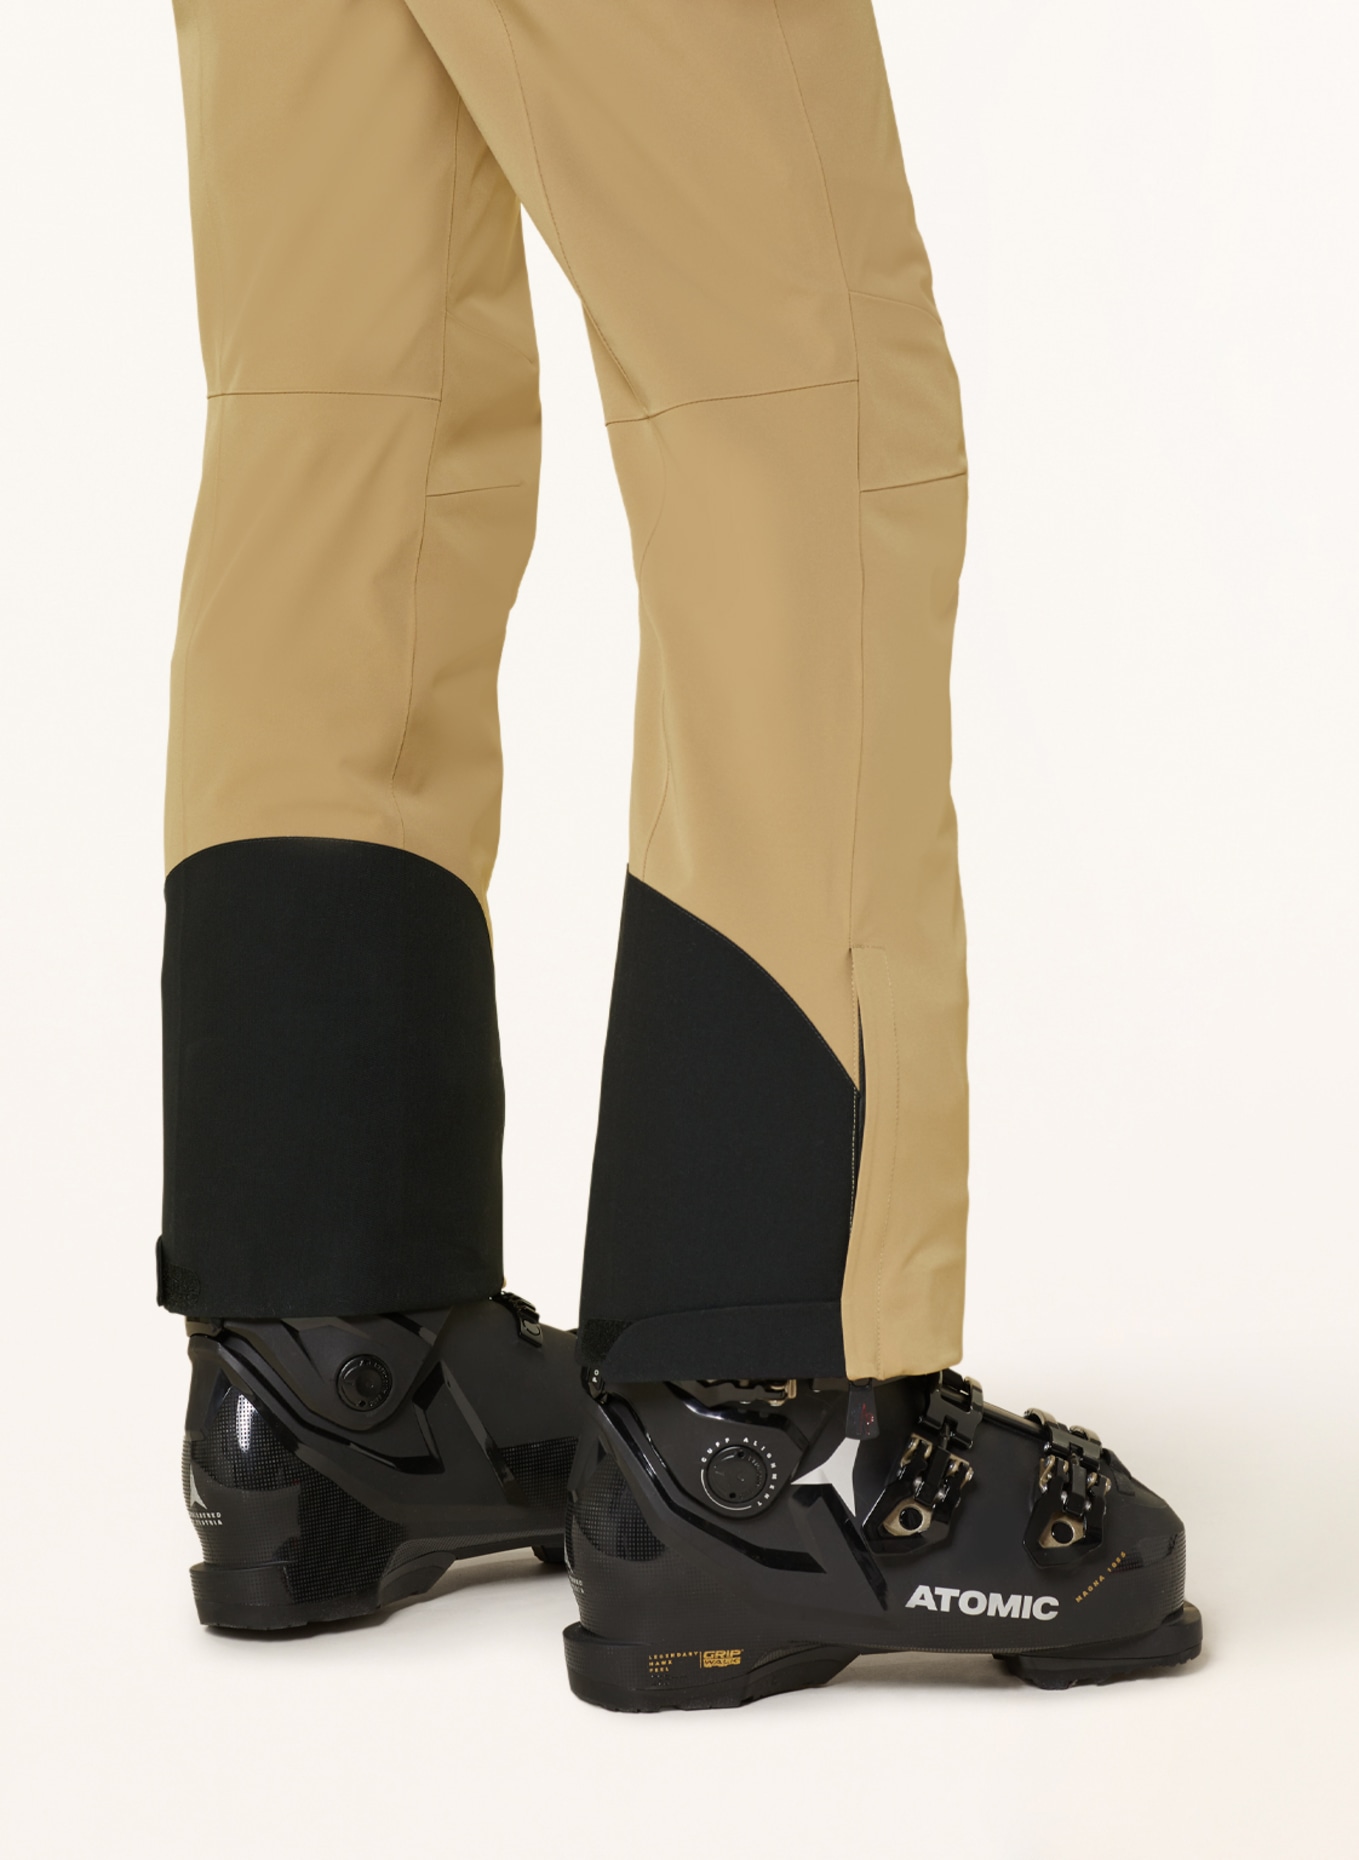 MONCLER GRENOBLE Ski pants, Color: BEIGE (Image 5)